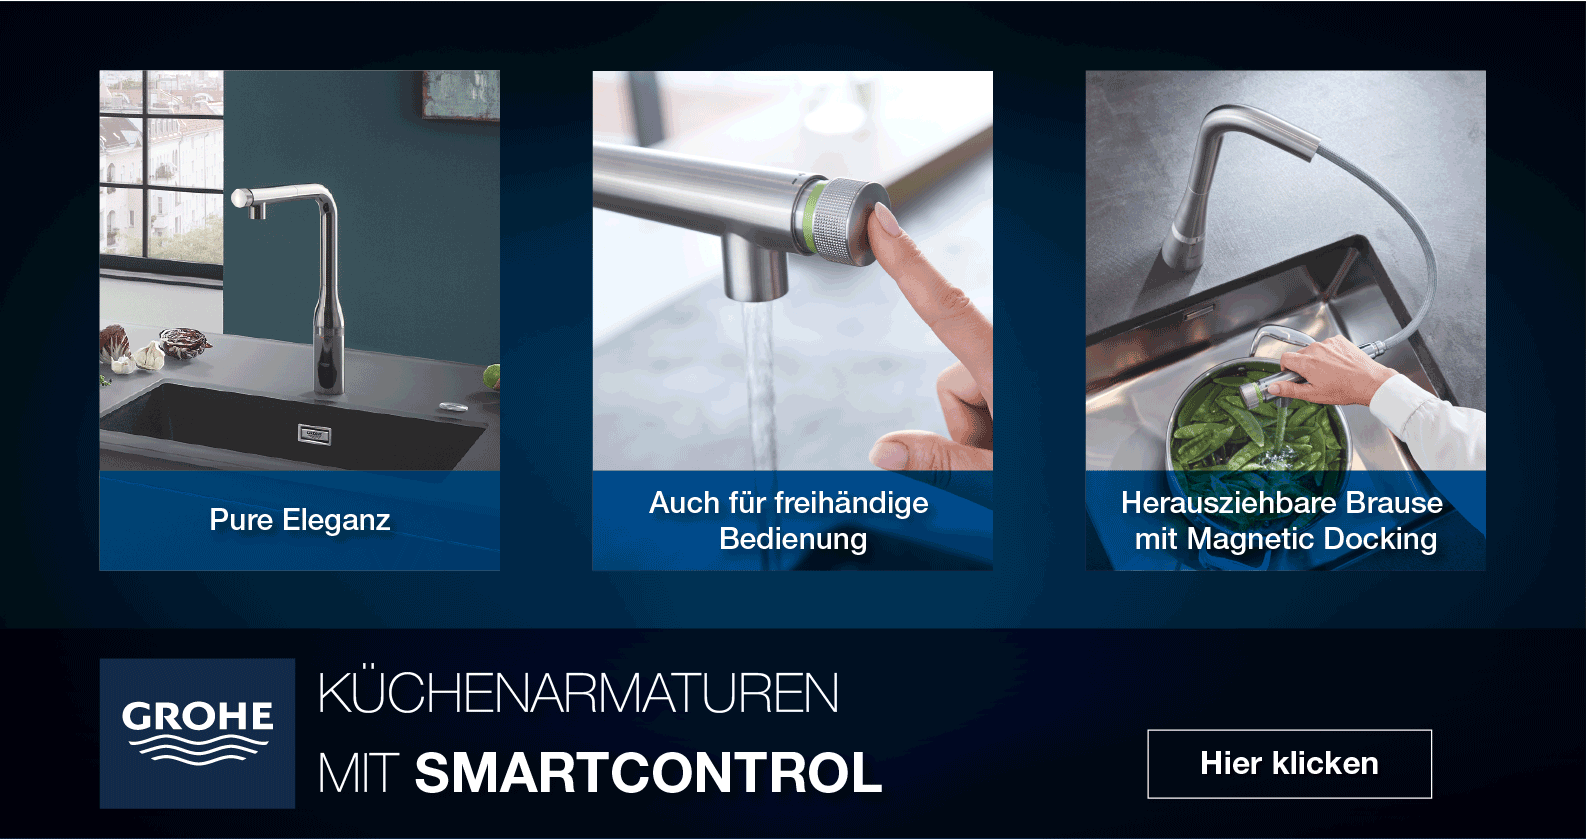 GROHE Küchenarmaturen mit SmartControl bei xTWOstore